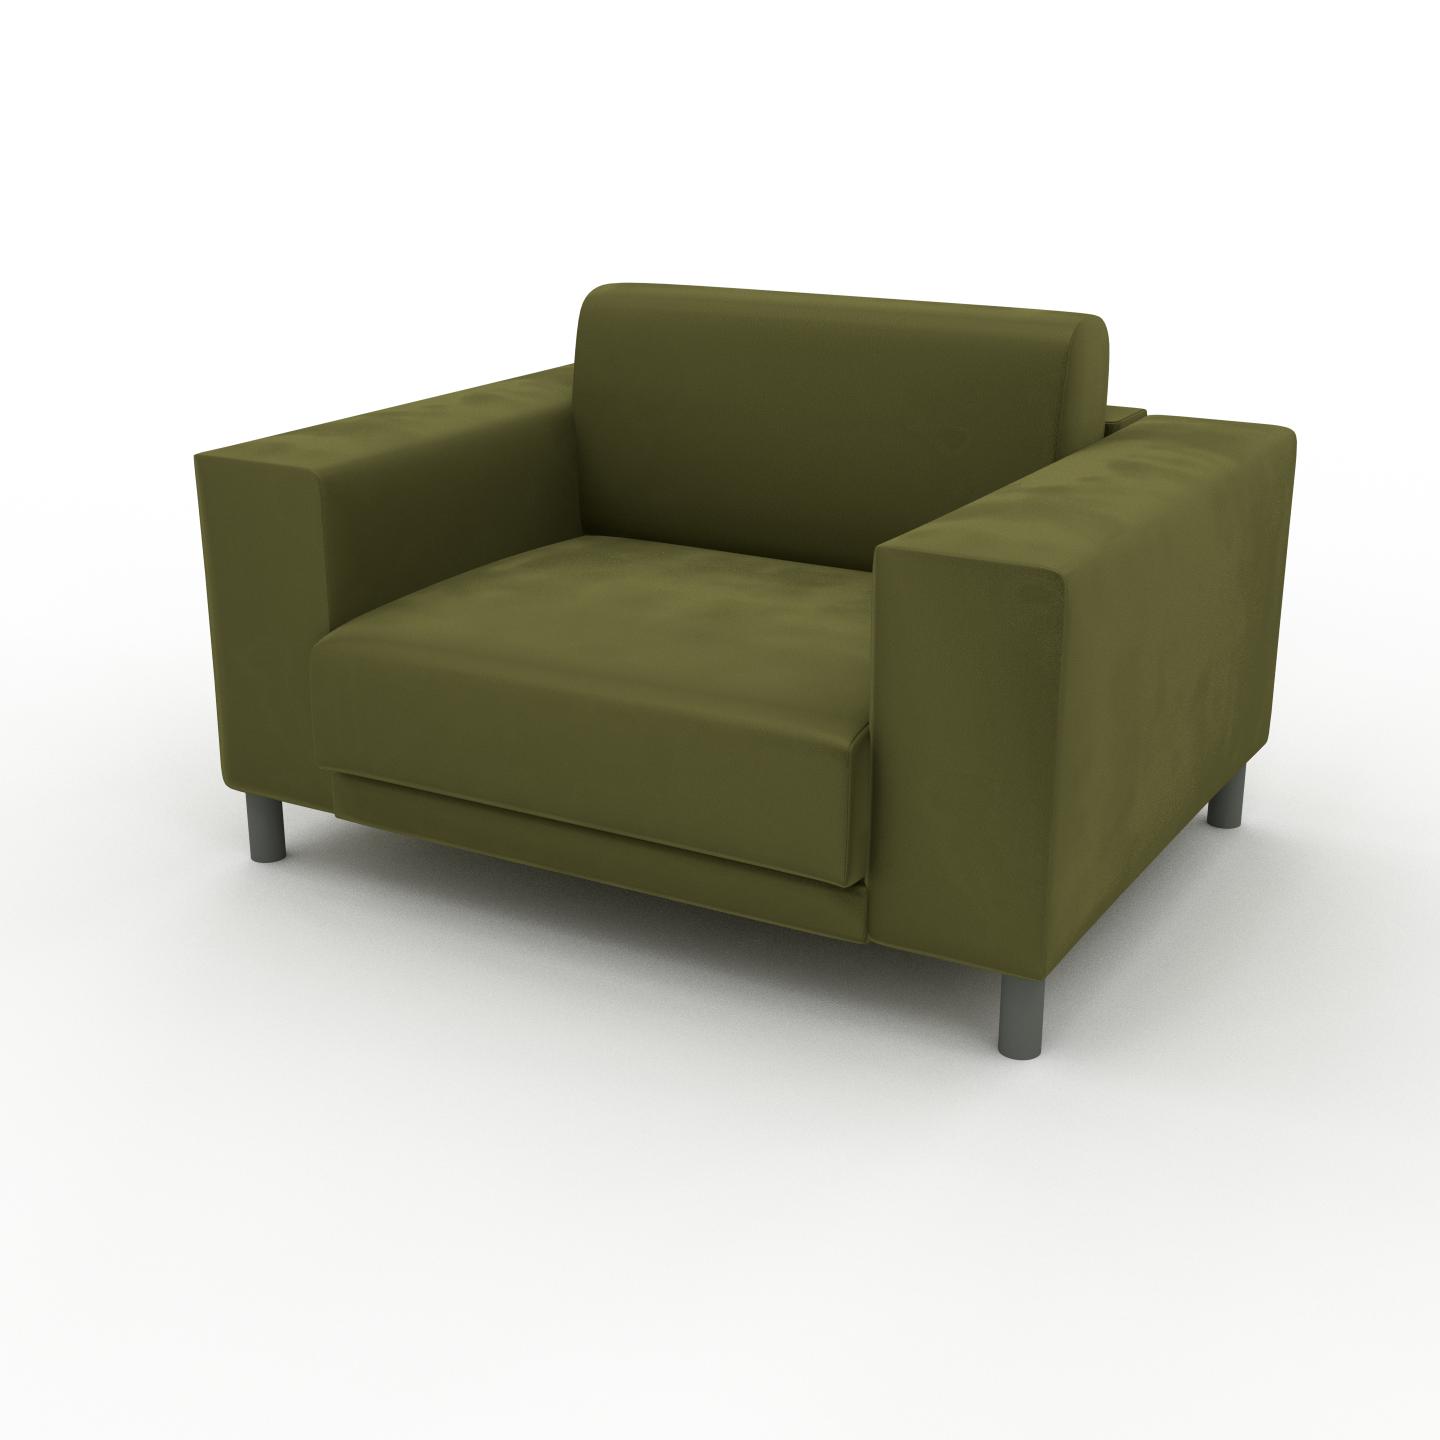 MYCS Sessel Samt Olivgrün - Eleganter Sessel: Hochwertige Qualität, einzigartiges Design - 128 x 75 x 98 cm, Individuell konfigurierbar